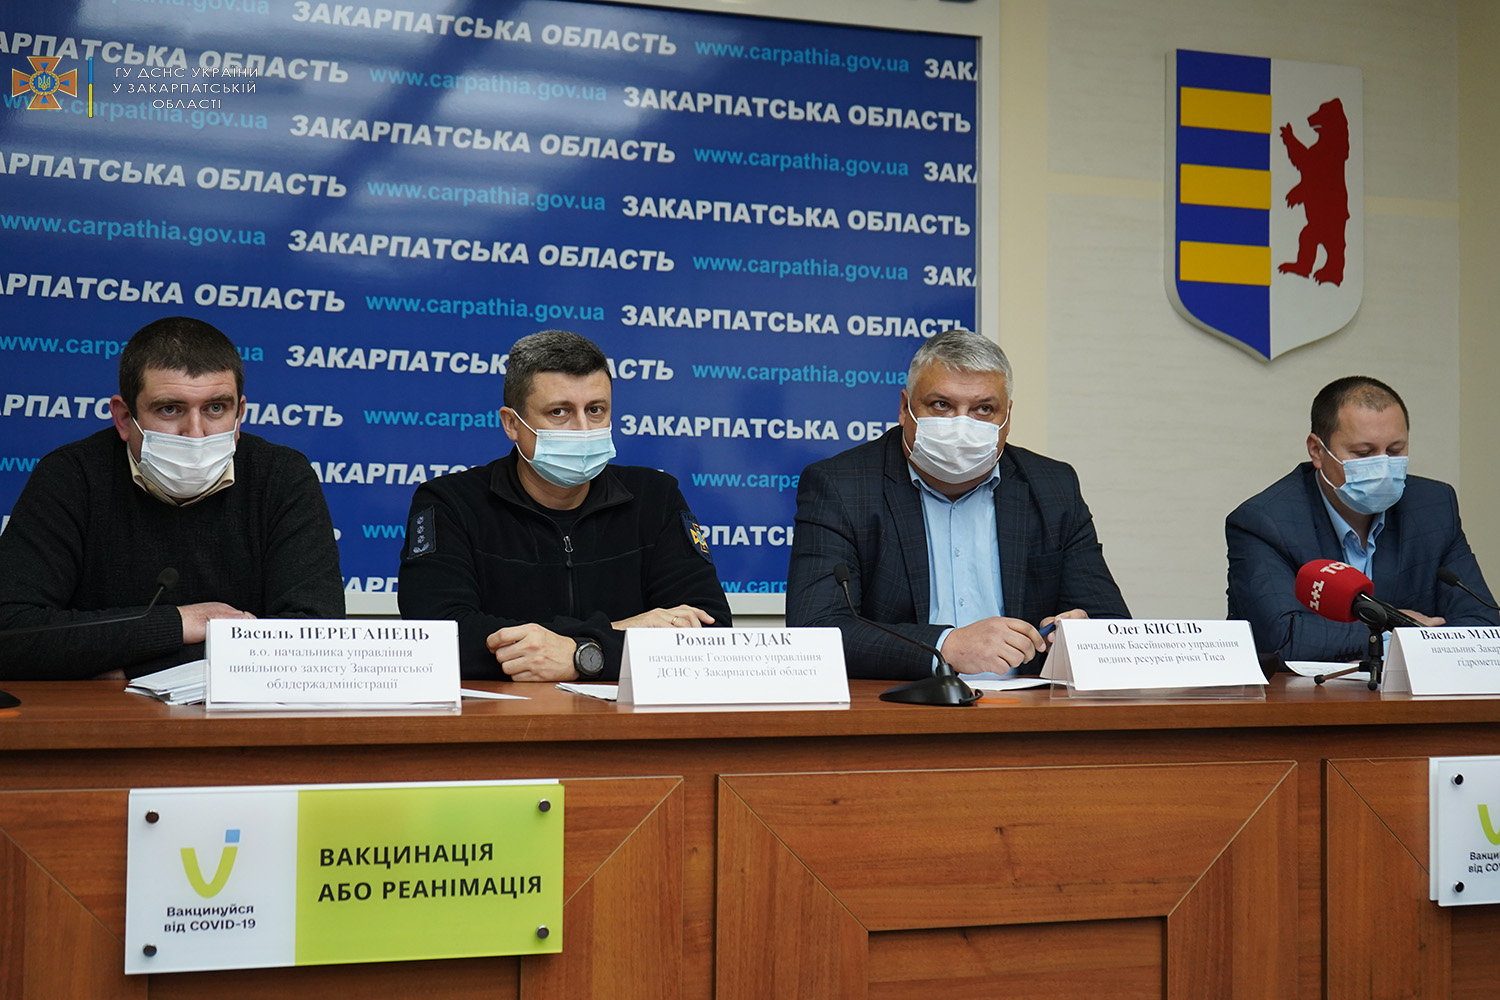 В Закарпатській ОДА, сьогодні, 6 січня, відбувся брифінг щодо паводкової ситуації в області та перебігу робіт з ліквідації наслідків негоди.

